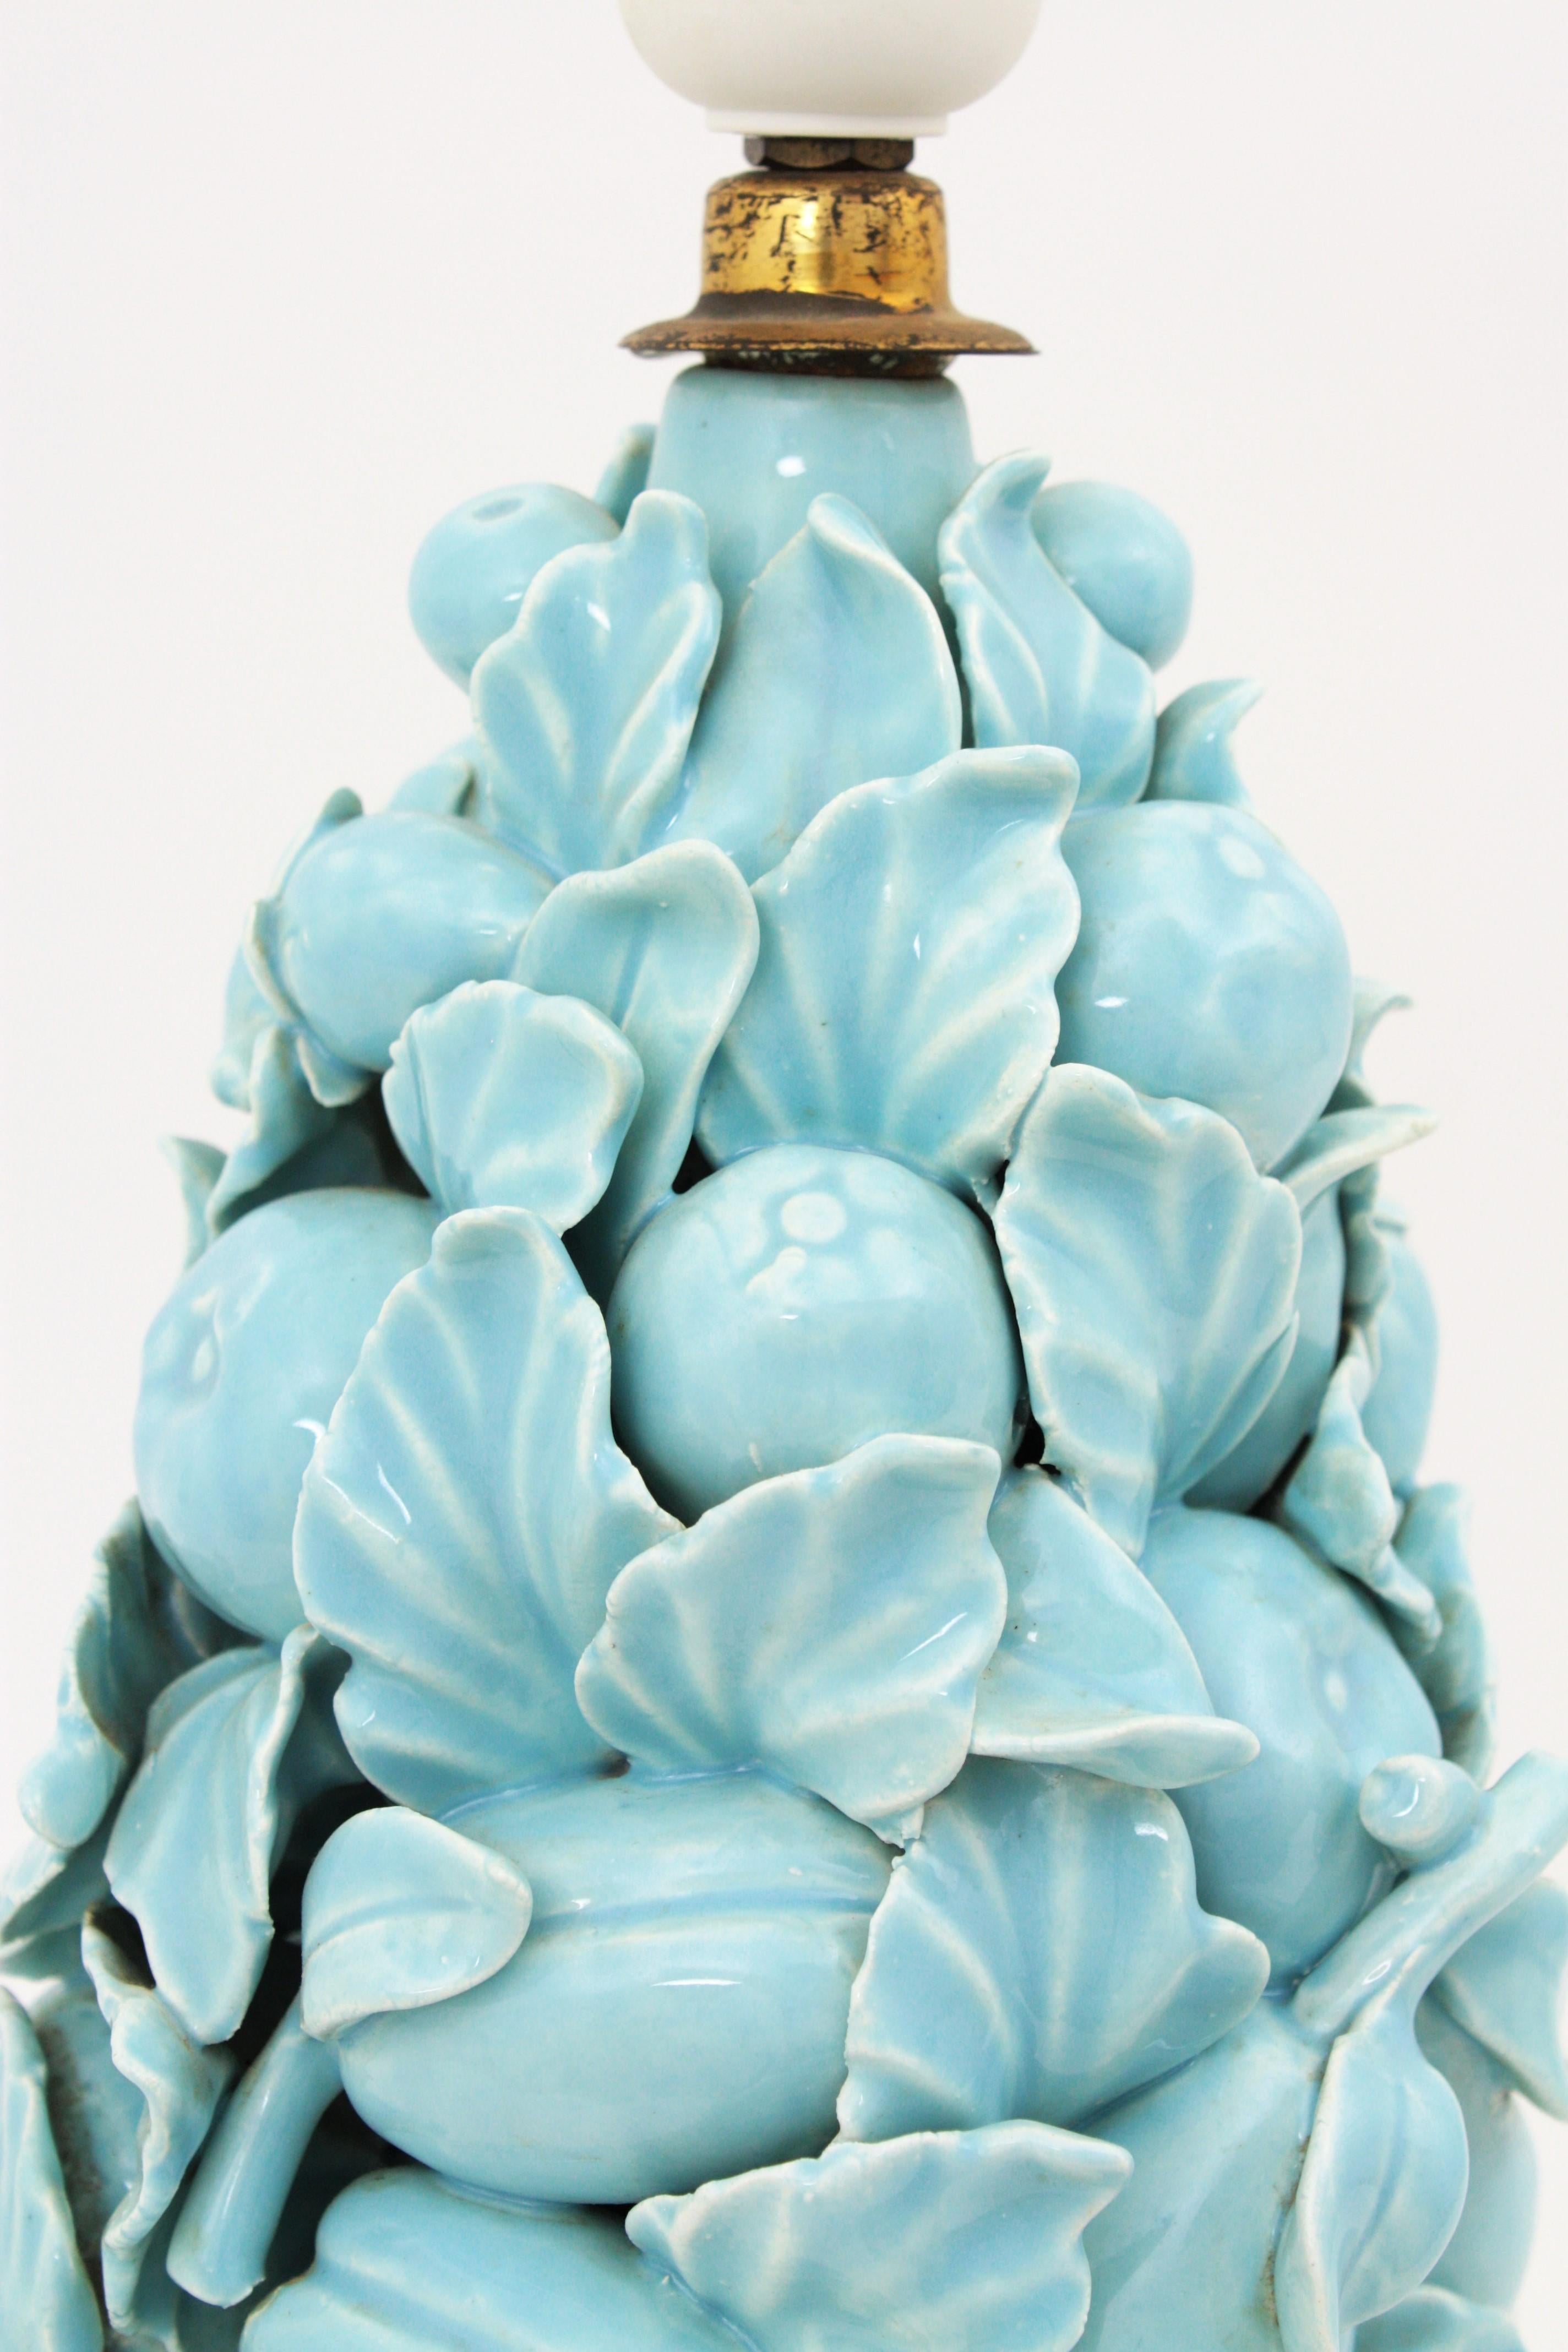 Spanish 1960s Majolica Blue Glazed Manises Ceramic Fruit Table Lamp 5